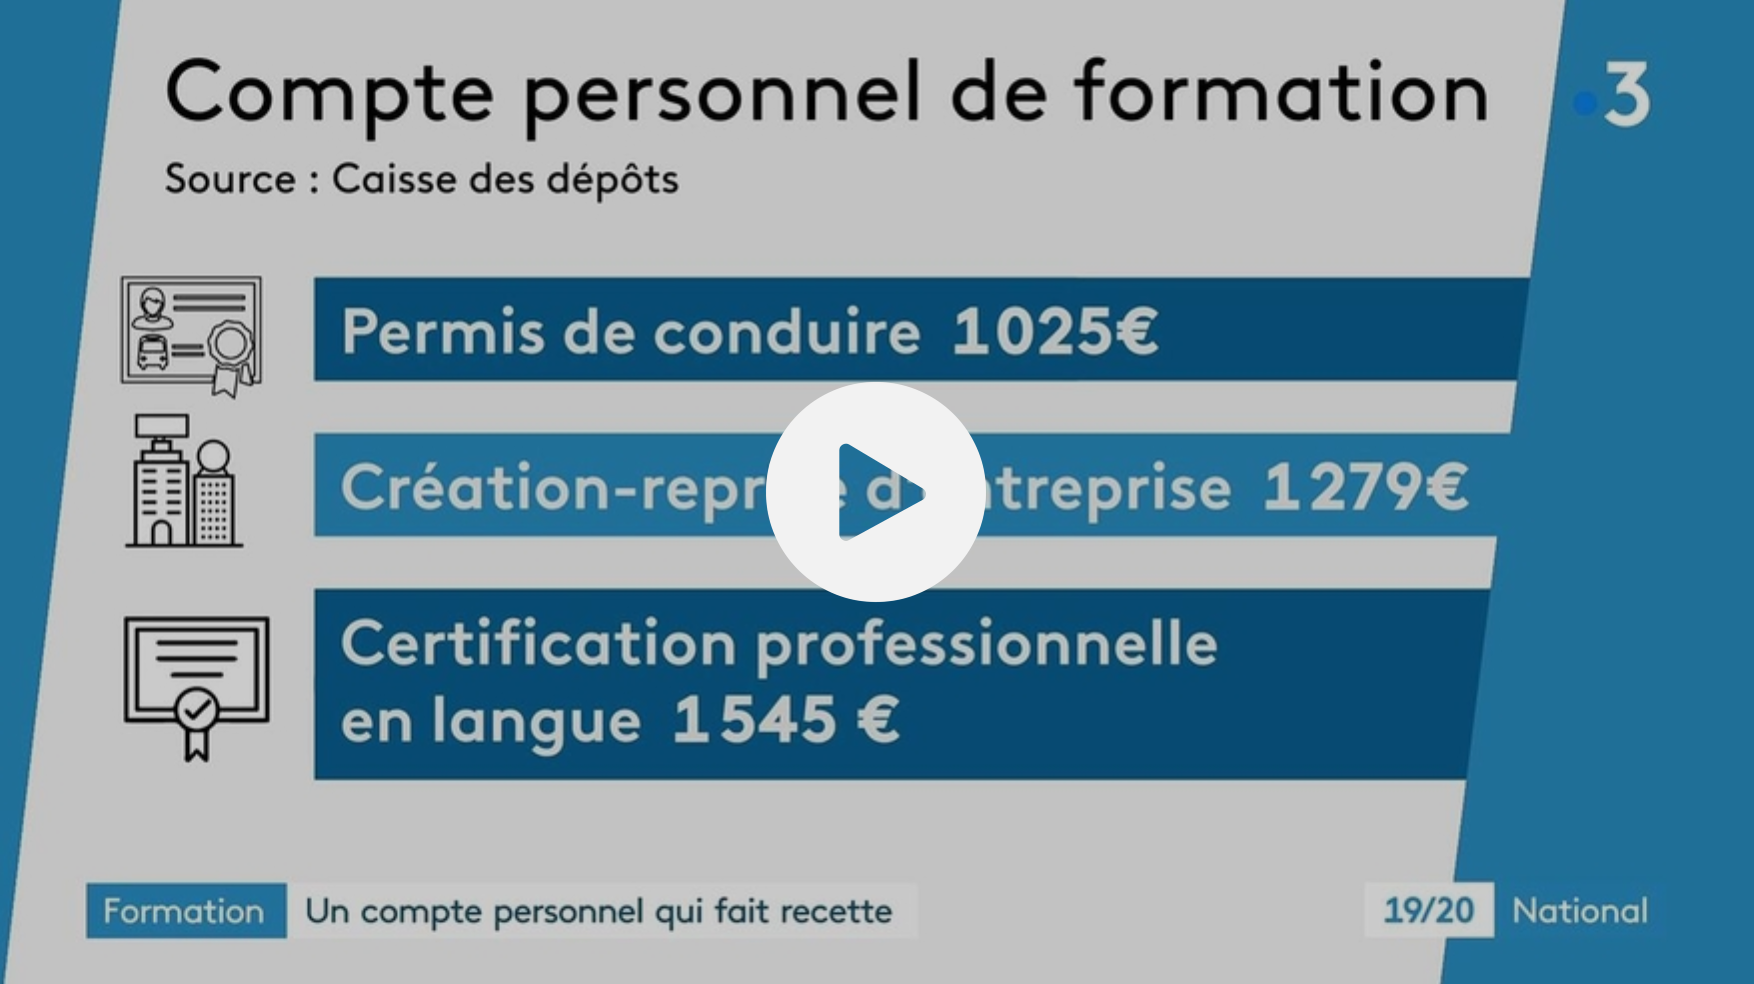 Formation : le compte personnel de formation connaît un franc succès — France Info